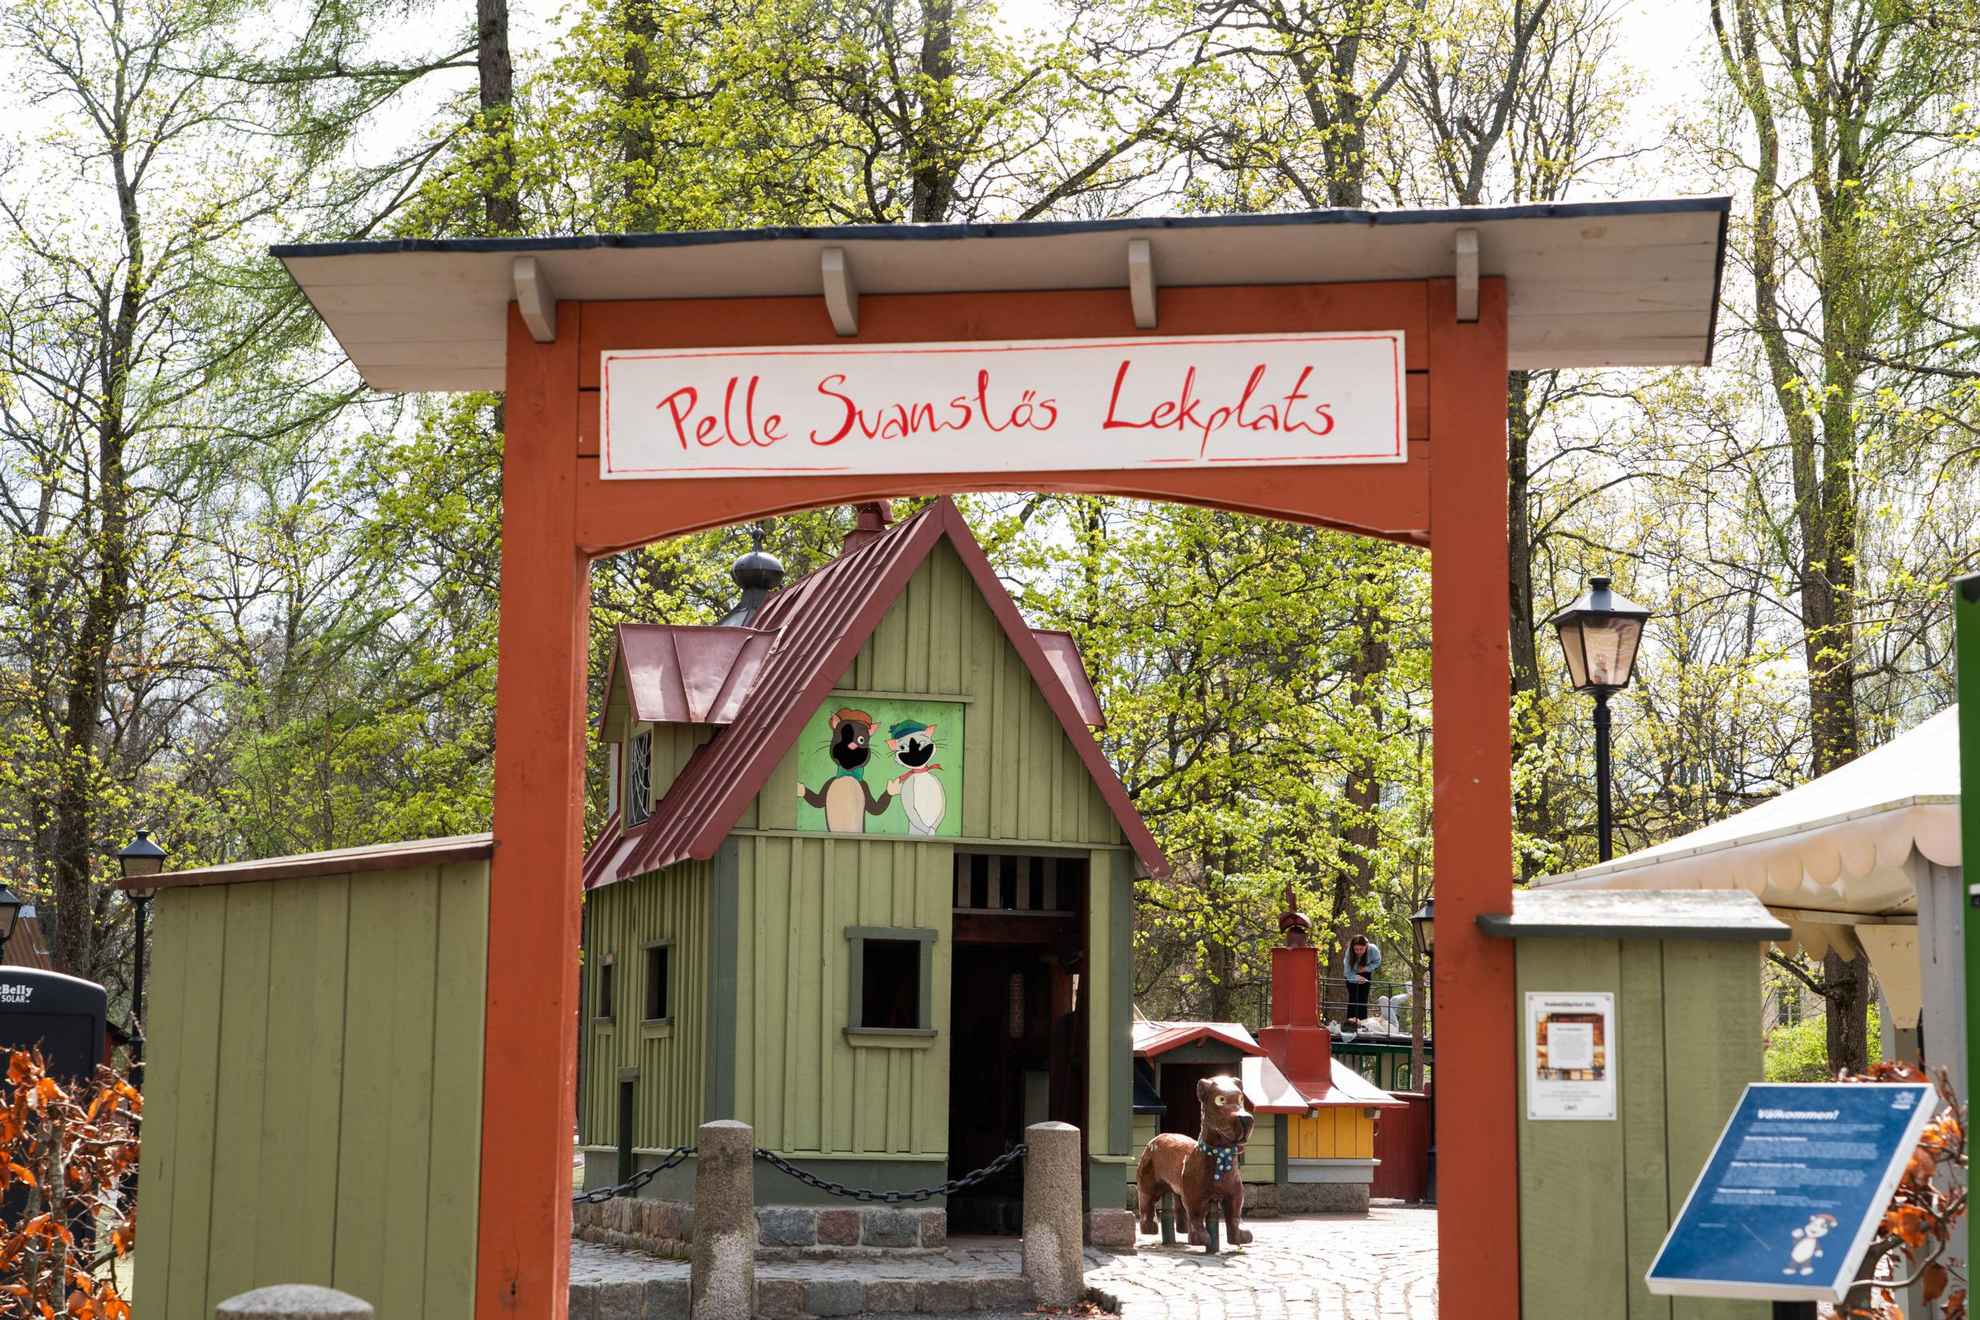 Der Eingang zum Spielplatz Pelle Svanslös („Peter ohne Schwanz“).